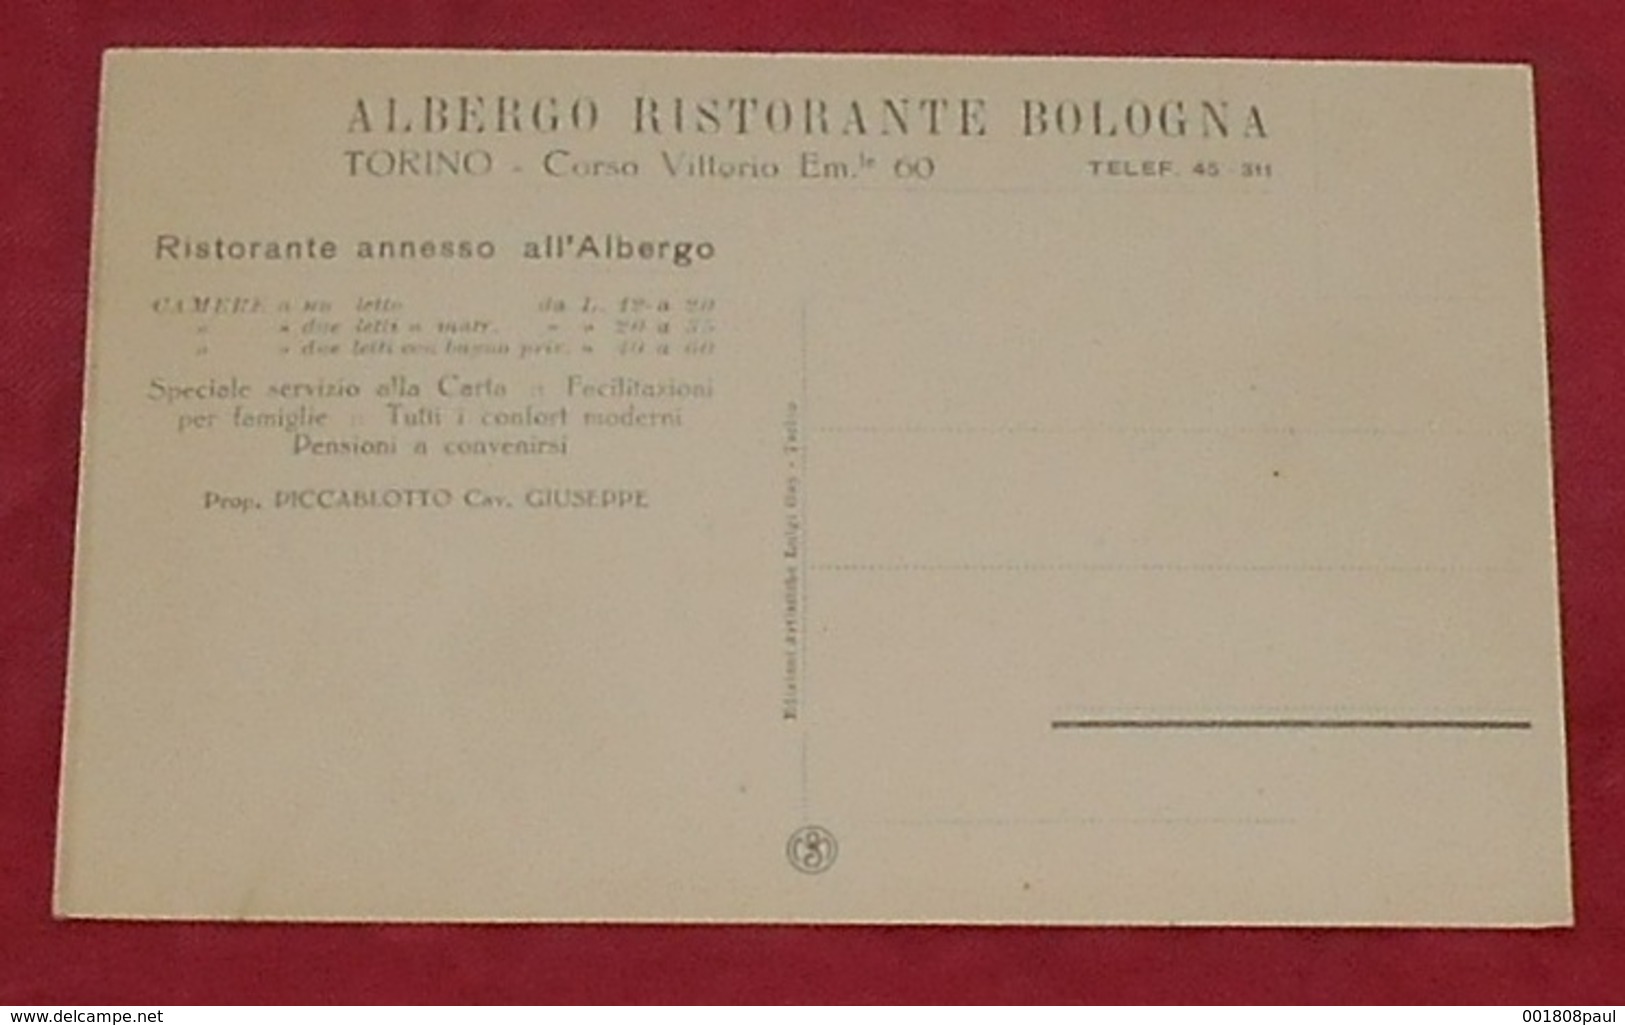 Alberto Ristorante  Bologna - Torino - Corso Vittorio Em. Le 60 :::: Animation - Tramways - Voitures --------------- 501 - Bar, Alberghi & Ristoranti